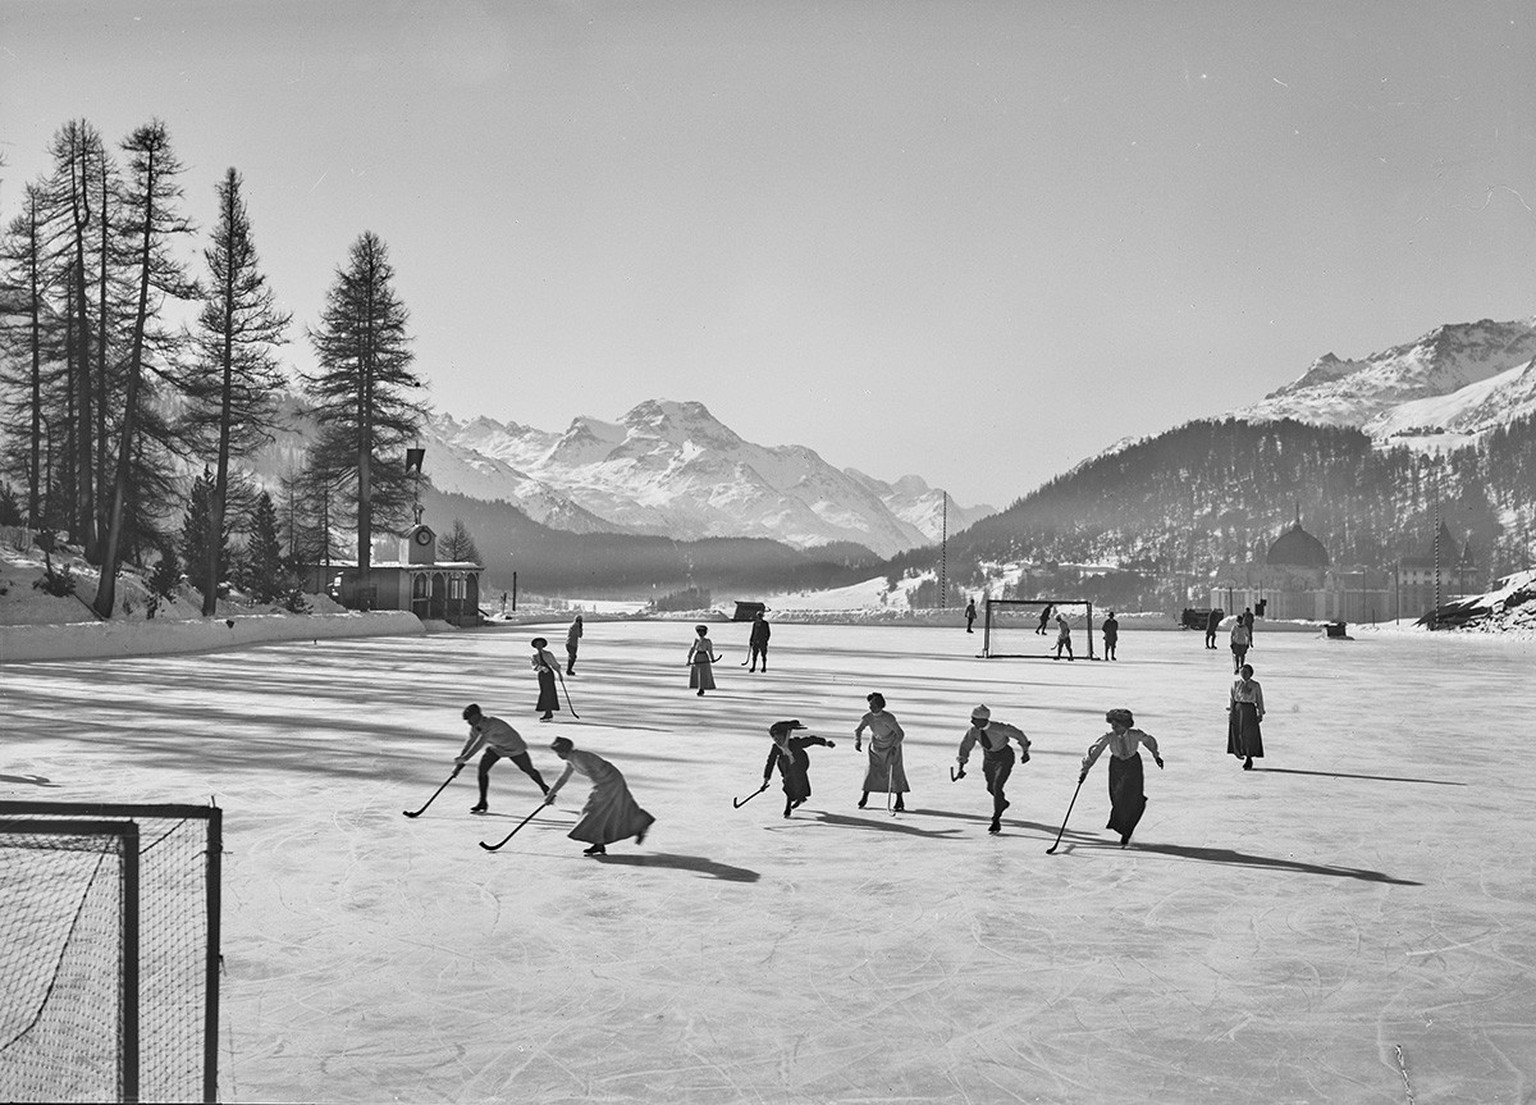 Frauen und Männer beim Bandyspiel, St. Moritz, 1910.
https://commons.wikimedia.org/wiki/File:CH-NB_Photoglob-Wehrli_EAD-WEHR-12437-B.tif